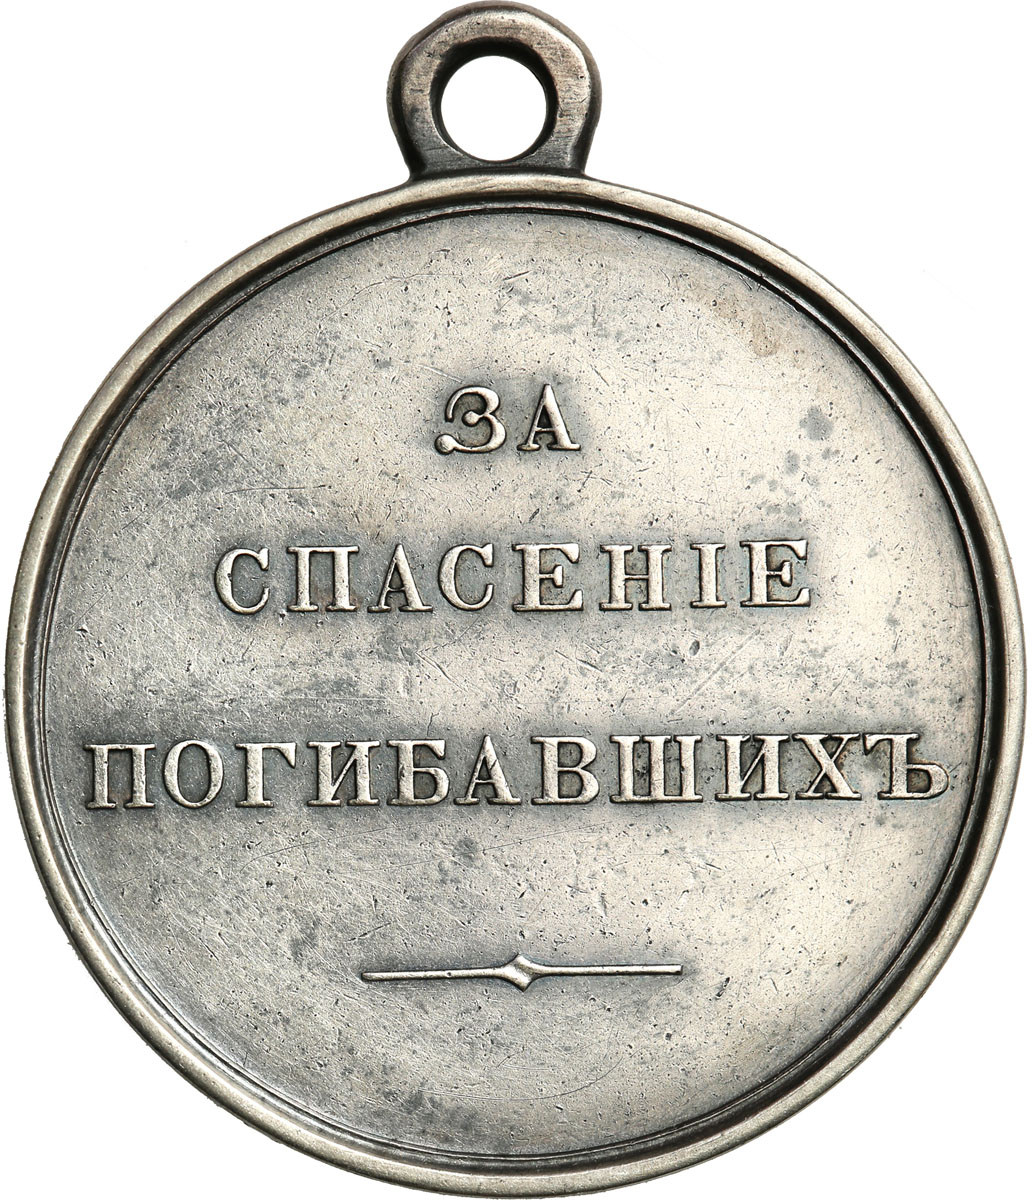 Rosja. Aleksander III. Medal za ratowanie ginących, srebro - RZADKI